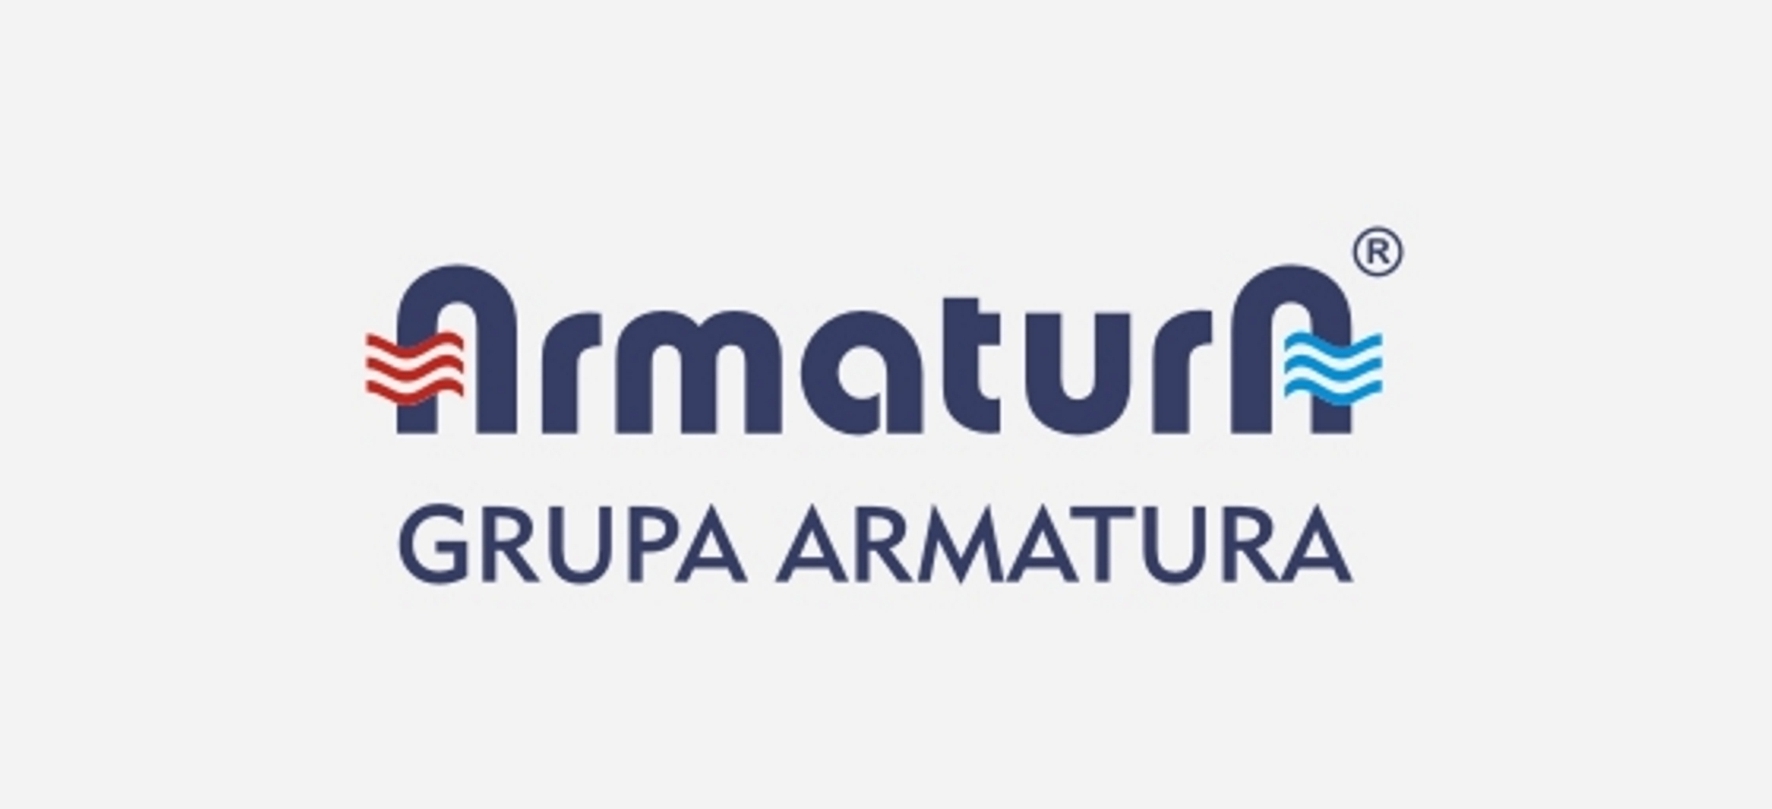 Armatura logo